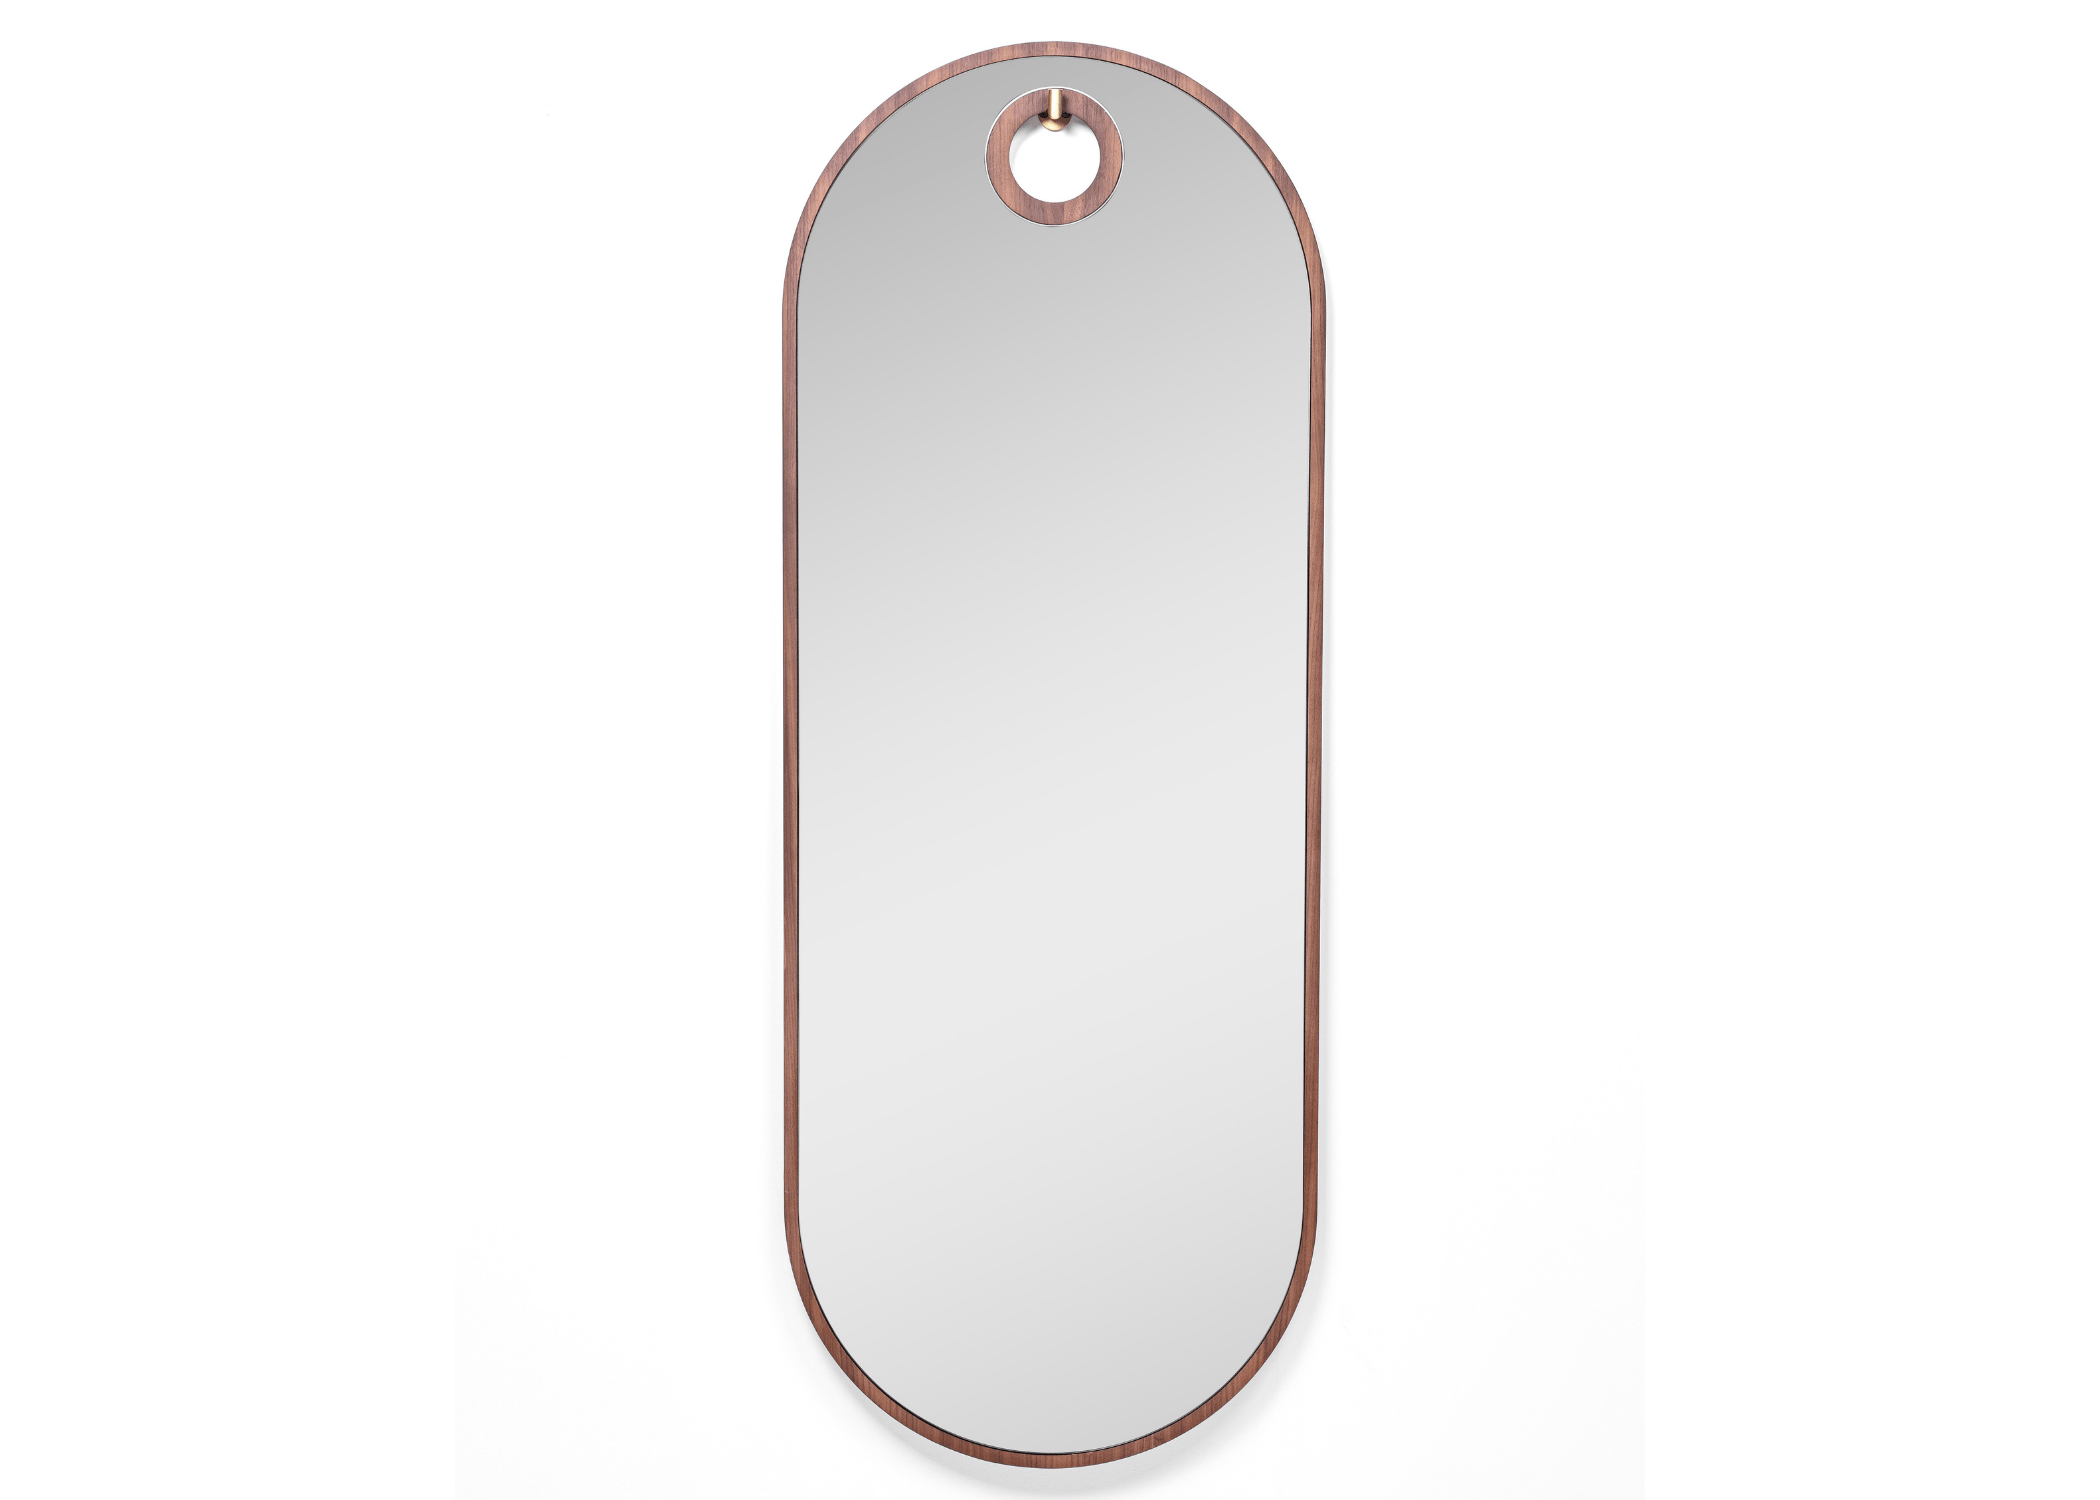 Espelho Arthemis Oblongo: Design arredondado para um ambiente harmonioso.